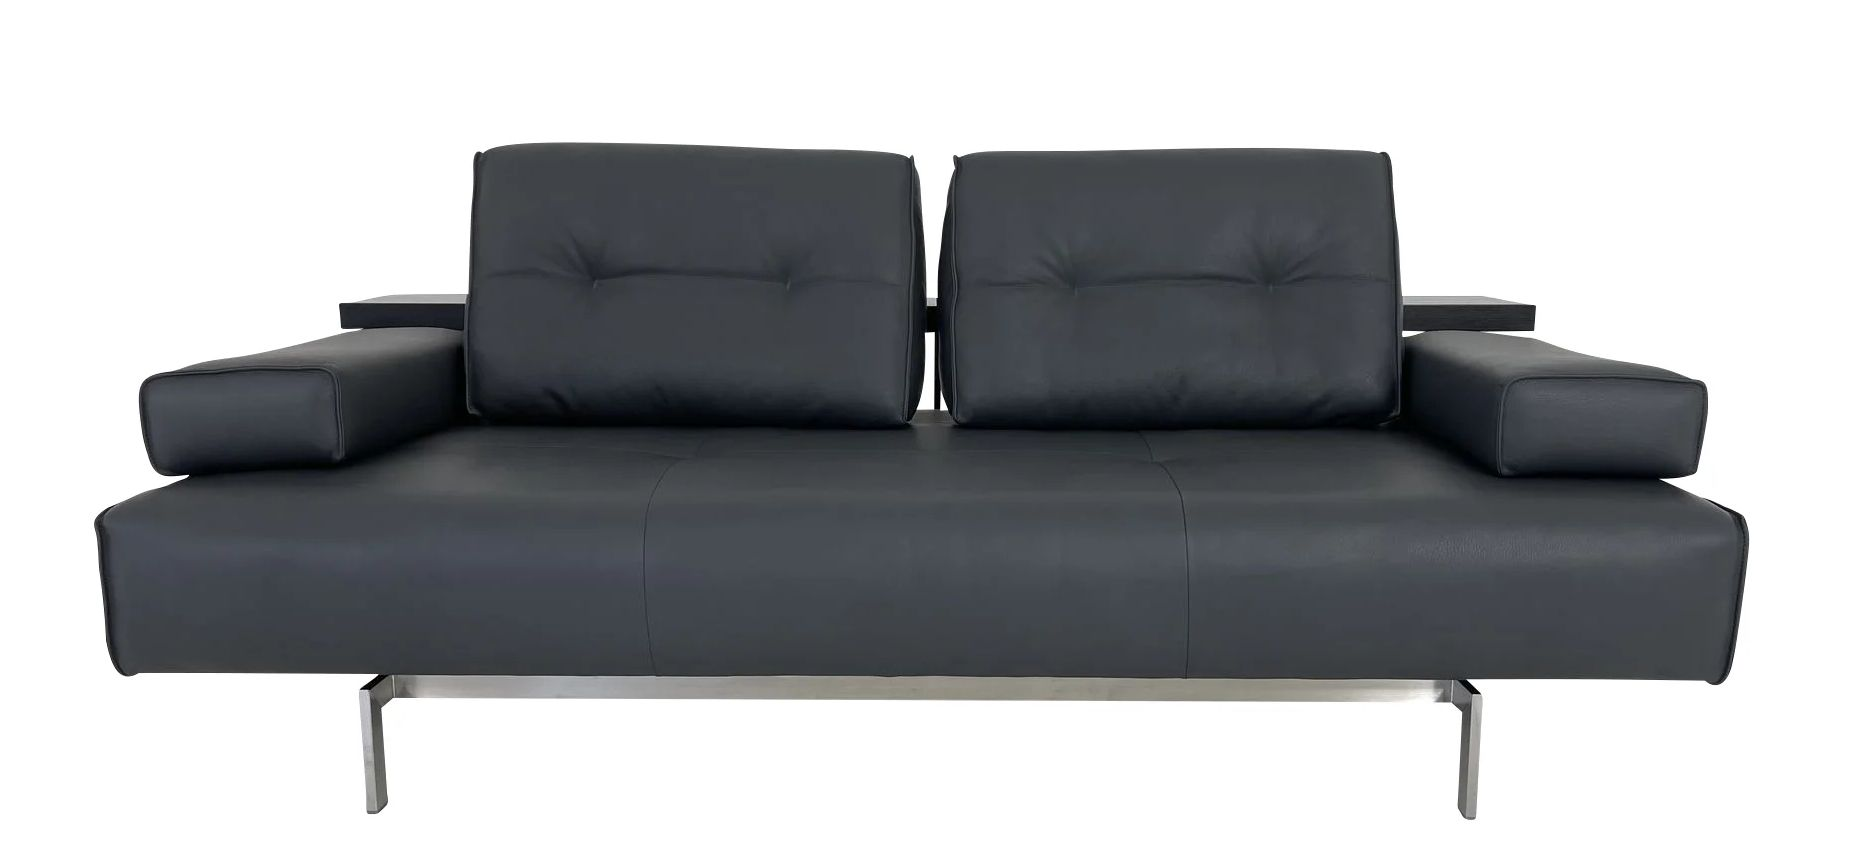 ROLF BENZ DONO Sofa 2 mit Edelstahlgestell und Sitzvorzug, ideal für die Aufstellung frei im Raum